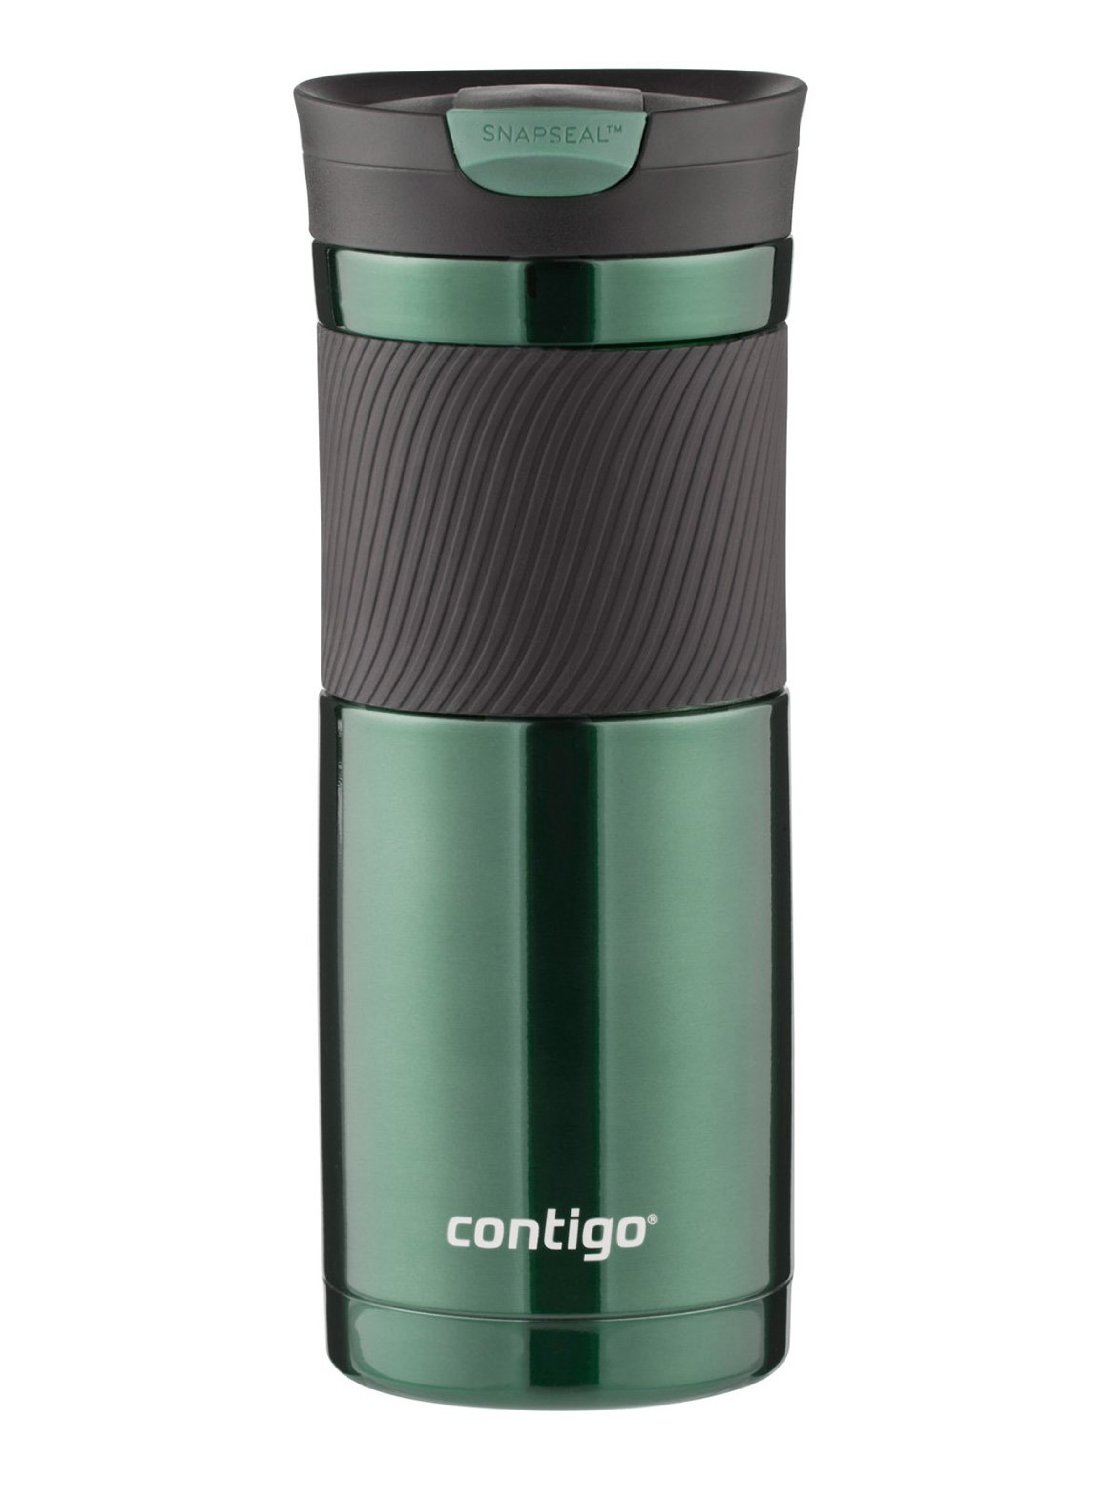 Conitigo Snapseal Insulated Travel Mugs – Just $8.99!